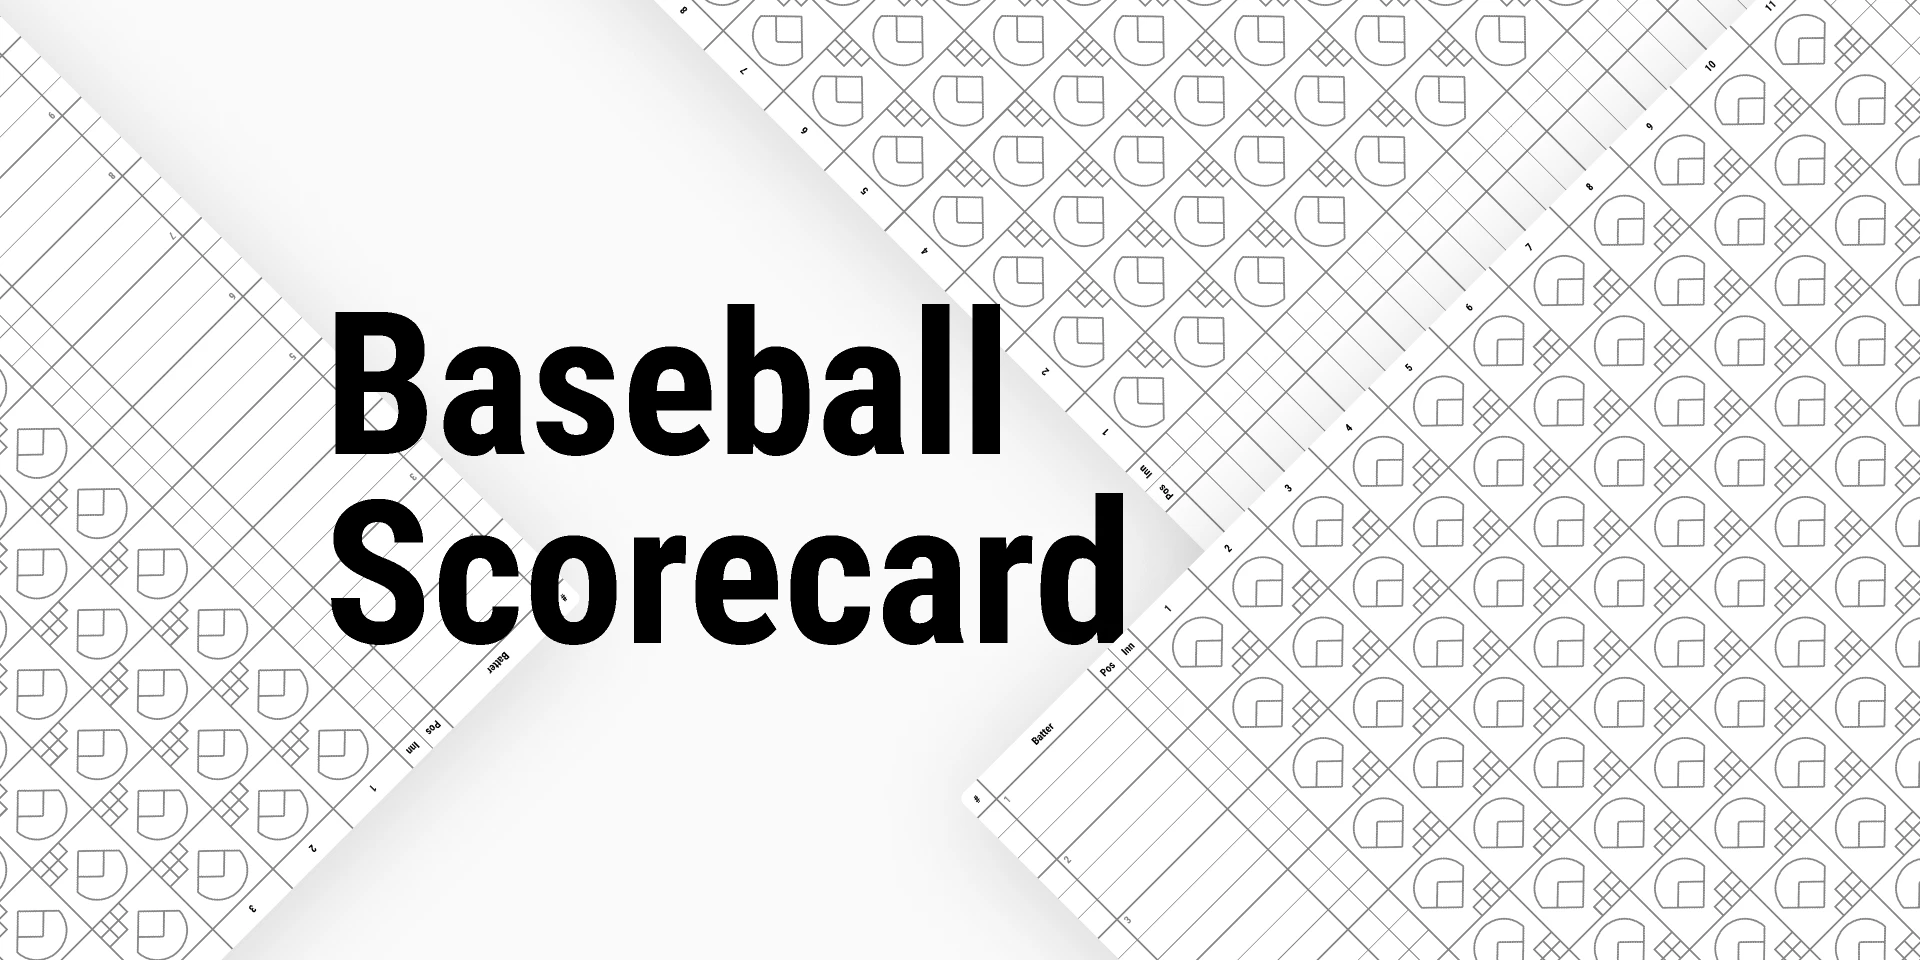 Baseball Scorecard for Figma and Adobe XD